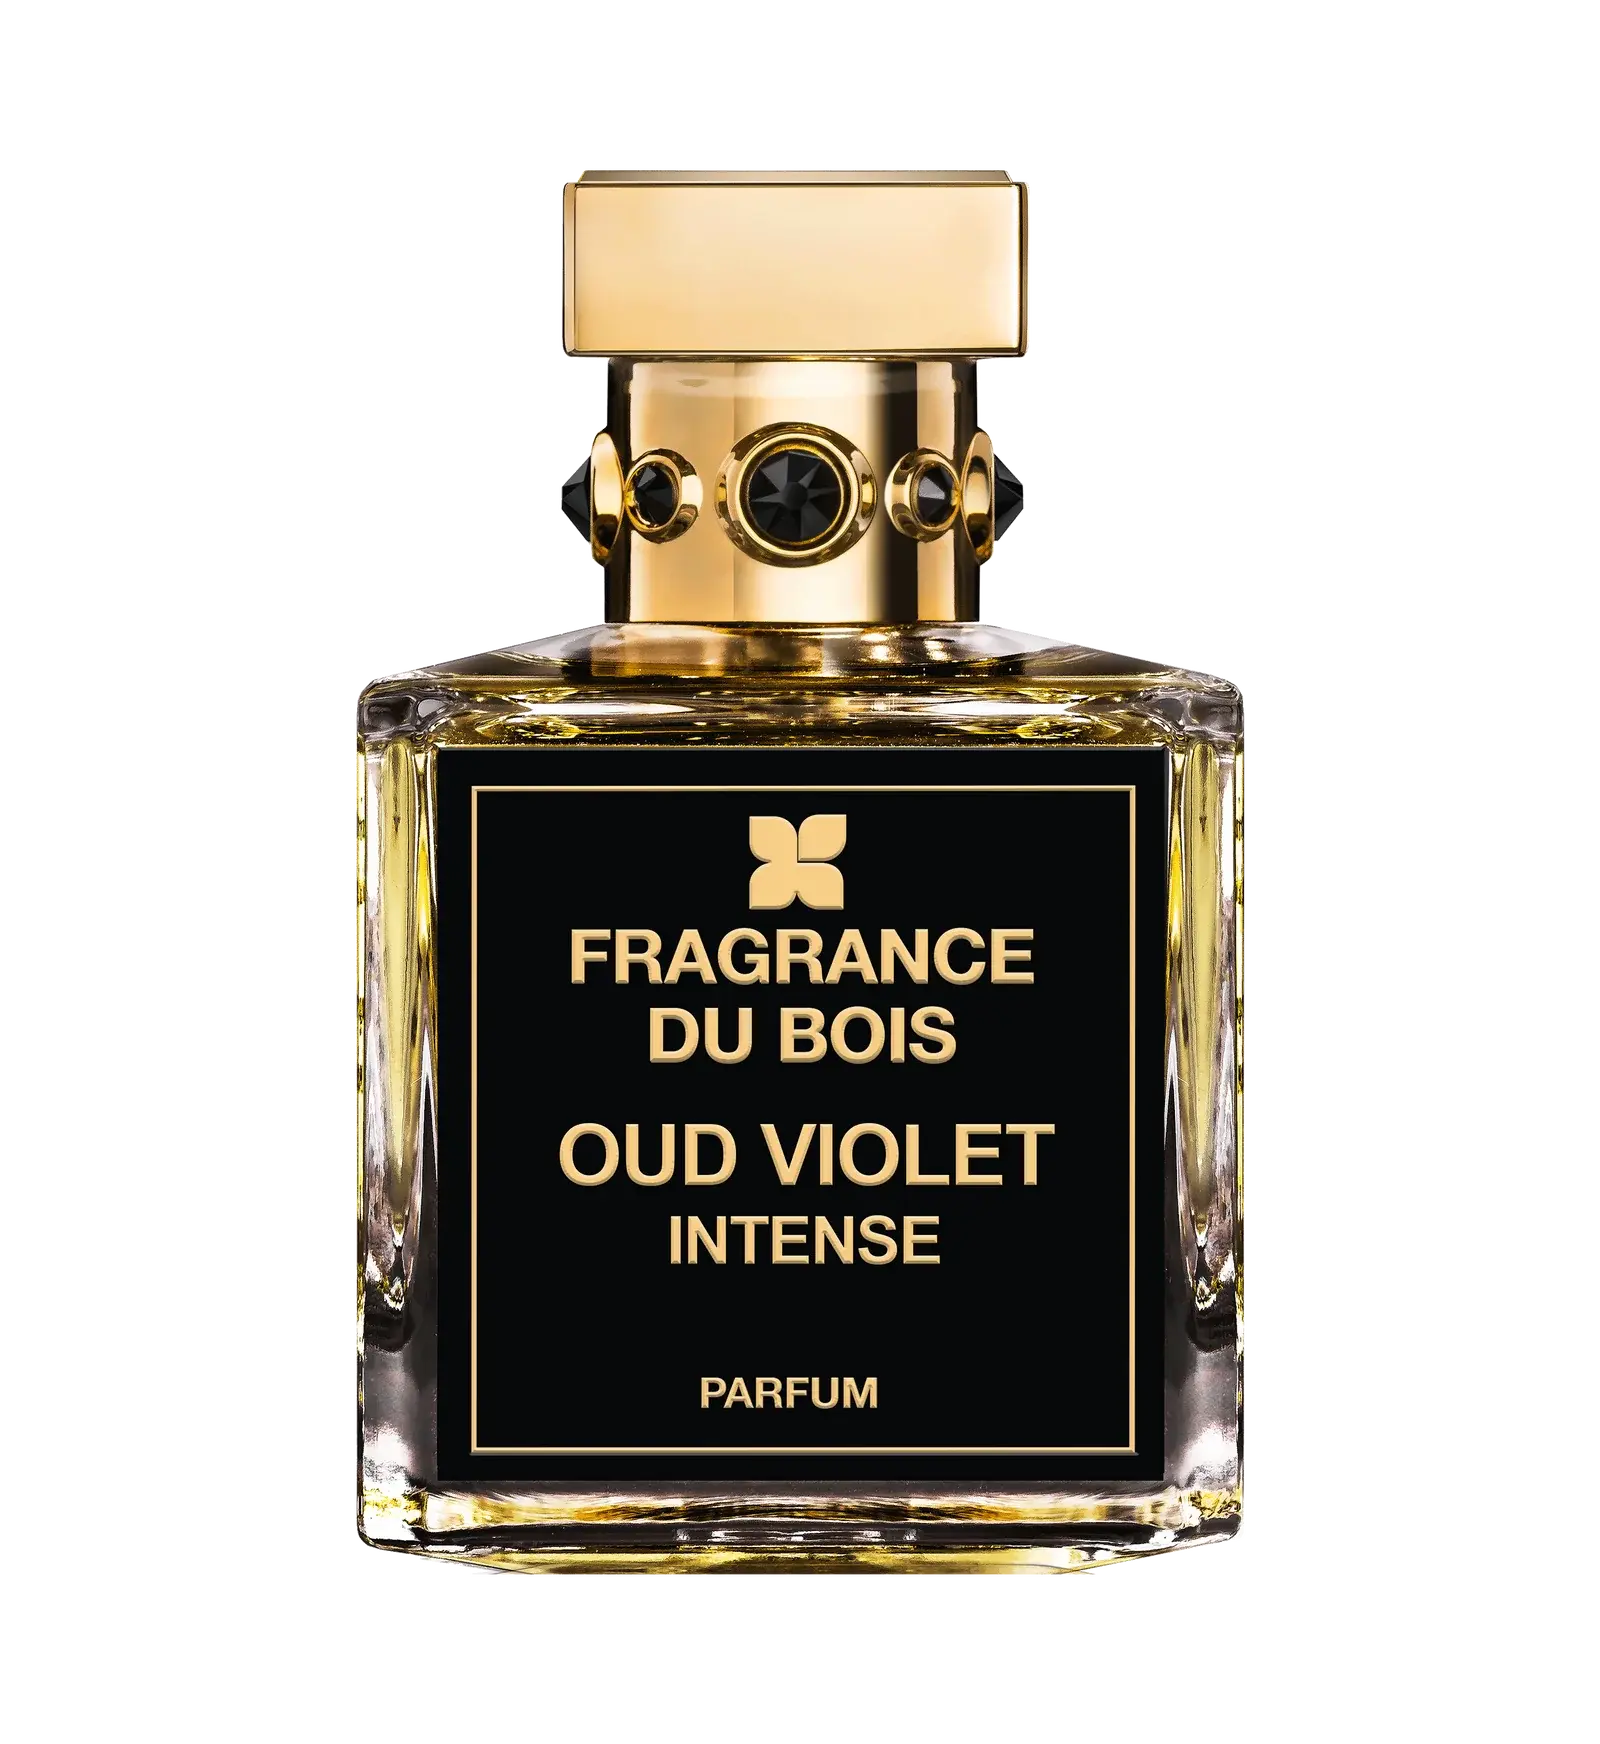 Fragrance du bois Fragrance du Bois Oud Violet Intense Edp – 50 ml